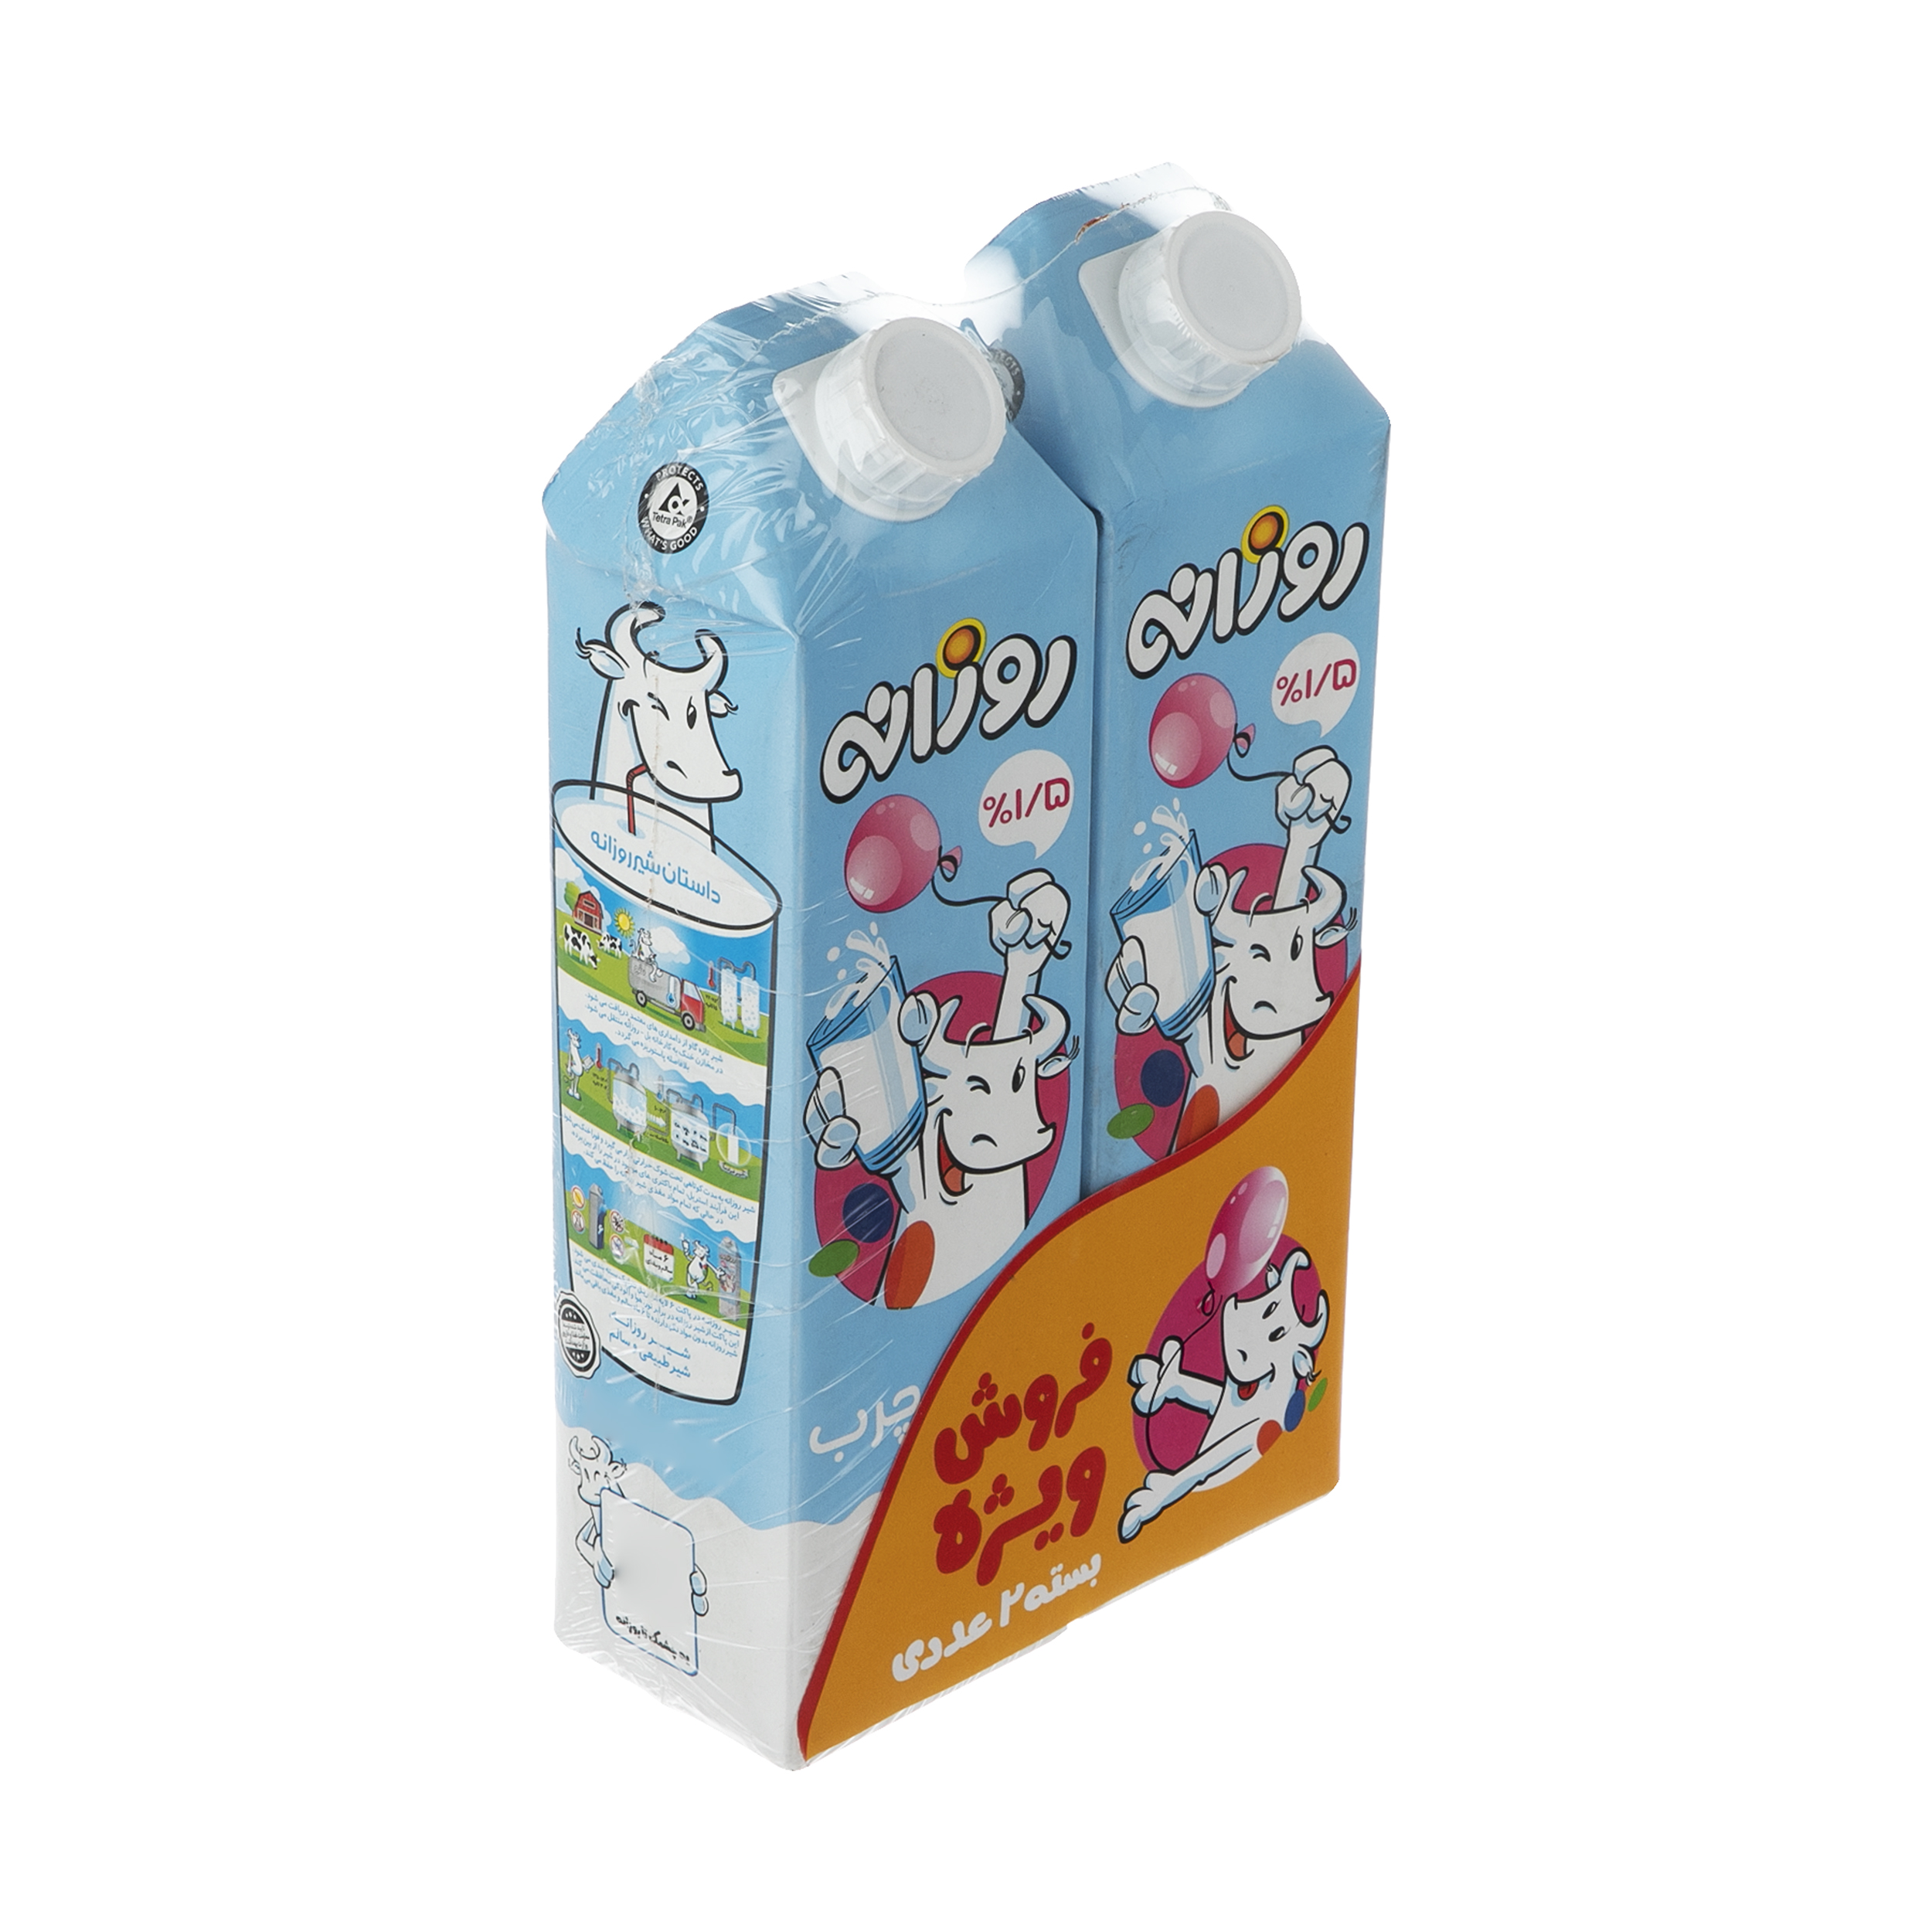 شیر کم چرب روزانه - 1 لیتر بسته 2 عددی